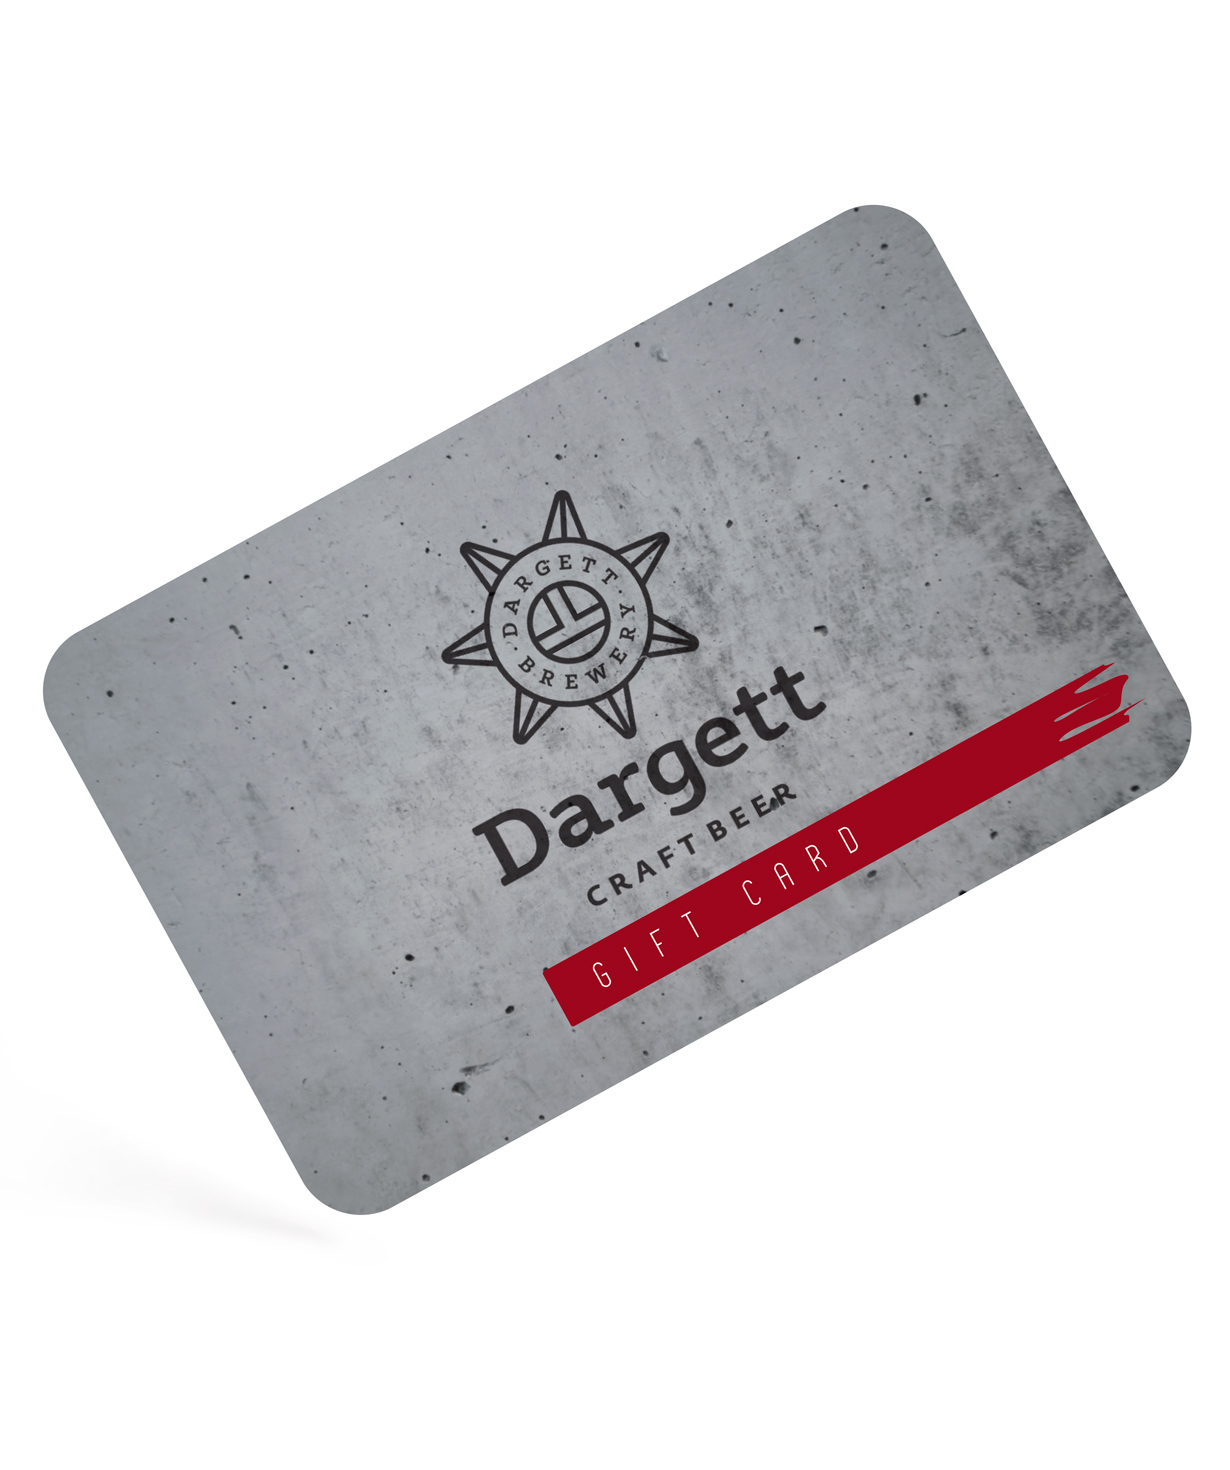 Նվեր-քարտ «Dargett» 100.000